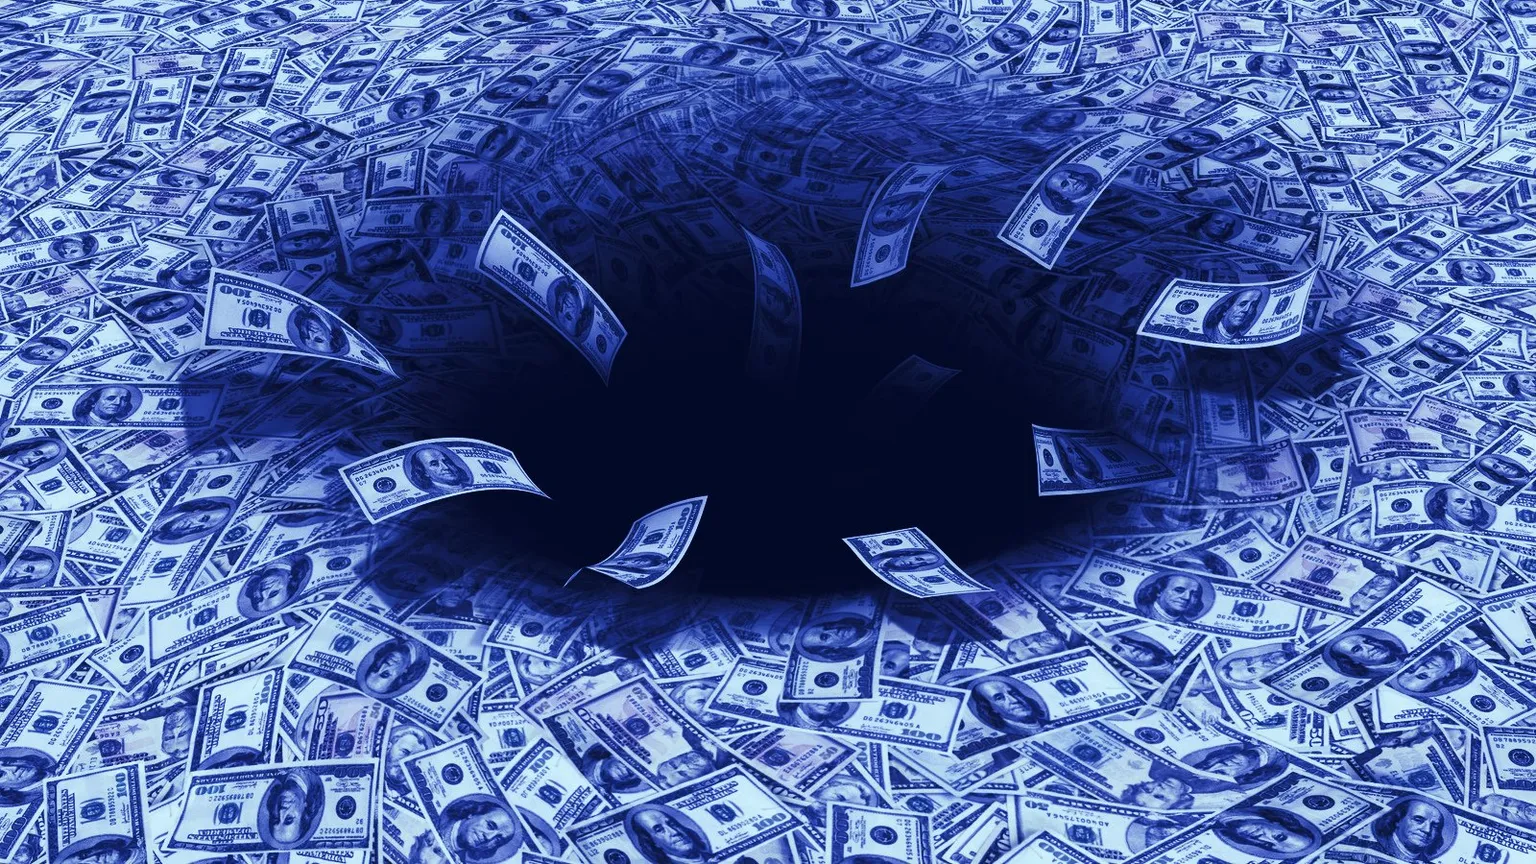 Los acreedores siguen perdiendo dinero. Imagen: Shutterstock